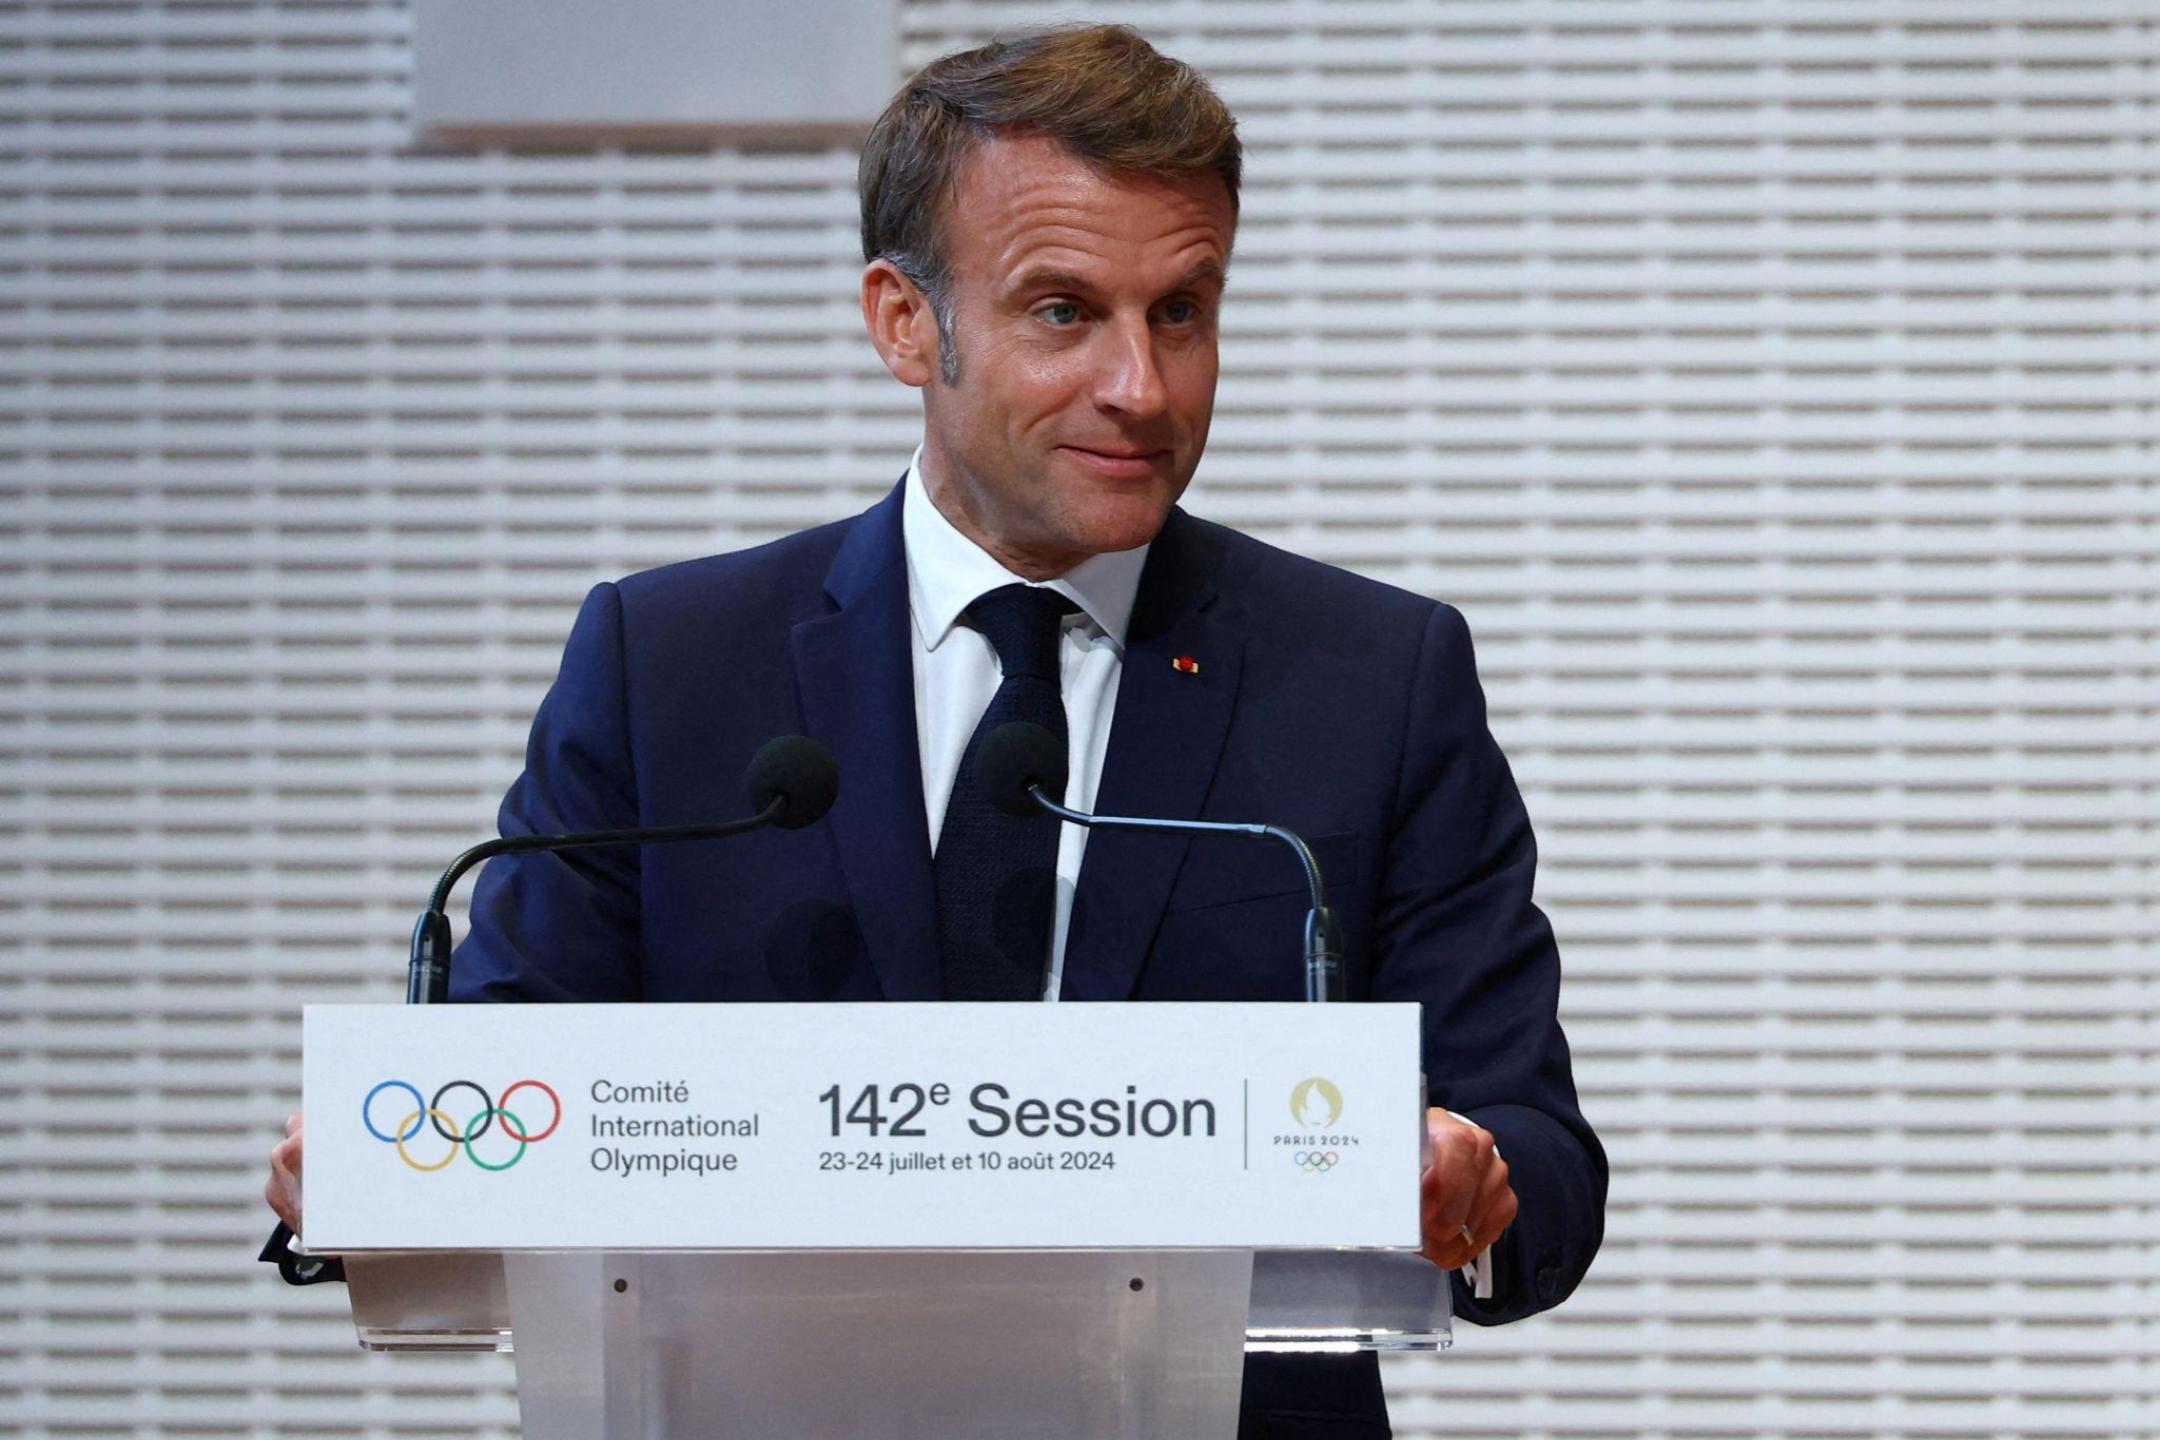 先专注举办巴黎奥运  马克龙: 8月中后才任命新总理